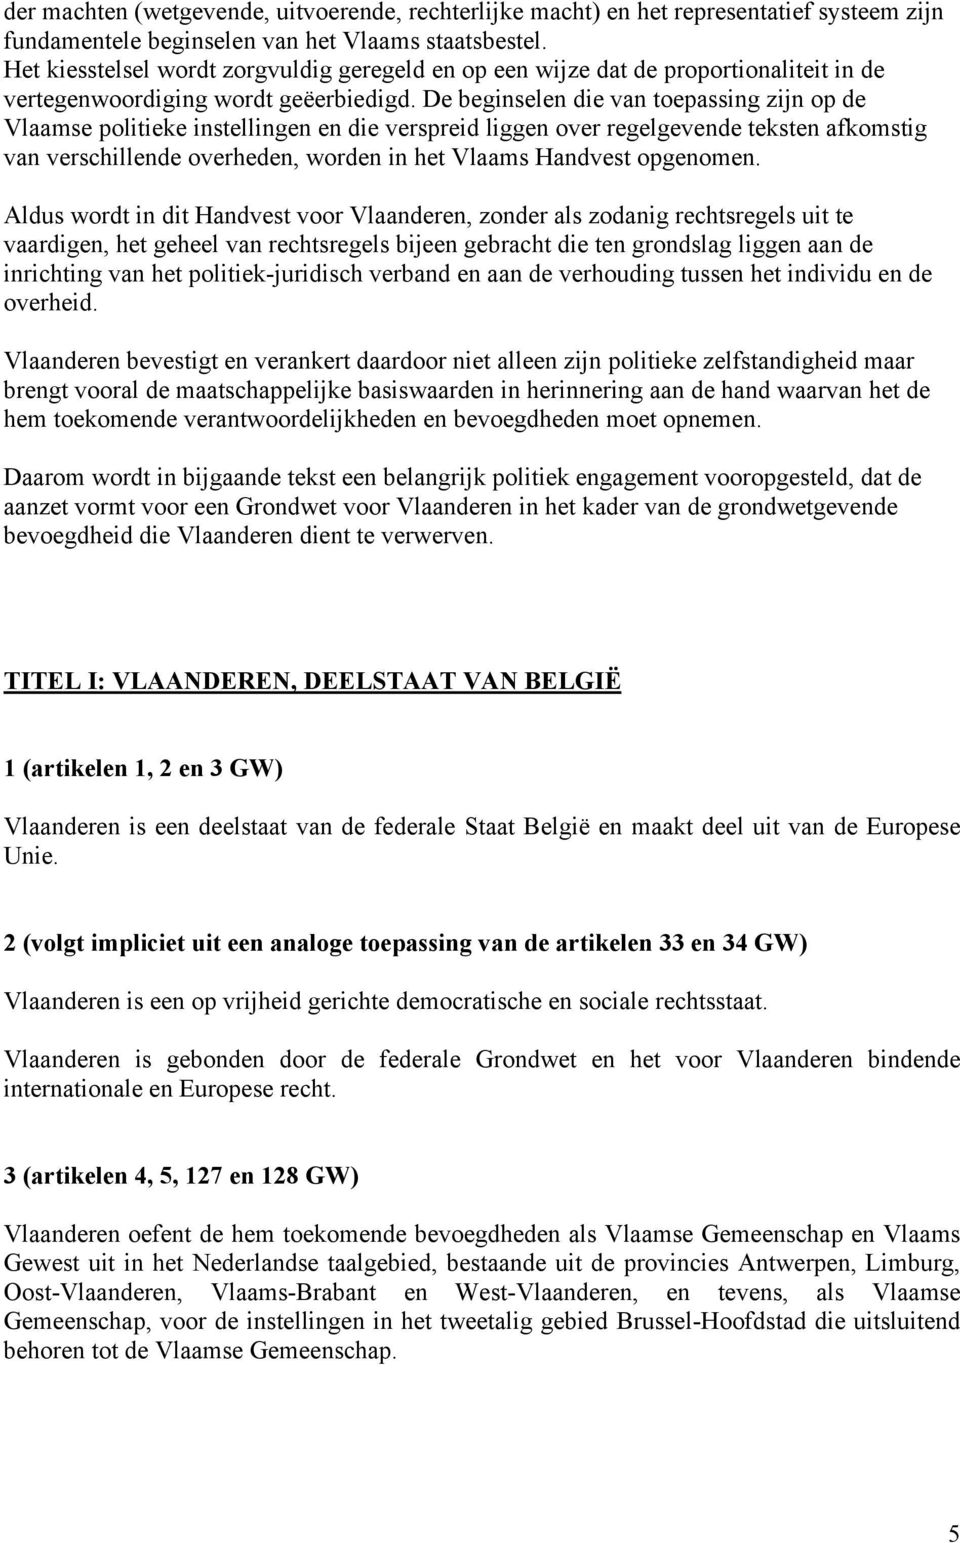 De beginselen die van toepassing zijn op de Vlaamse politieke instellingen en die verspreid liggen over regelgevende teksten afkomstig van verschillende overheden, worden in het Vlaams Handvest